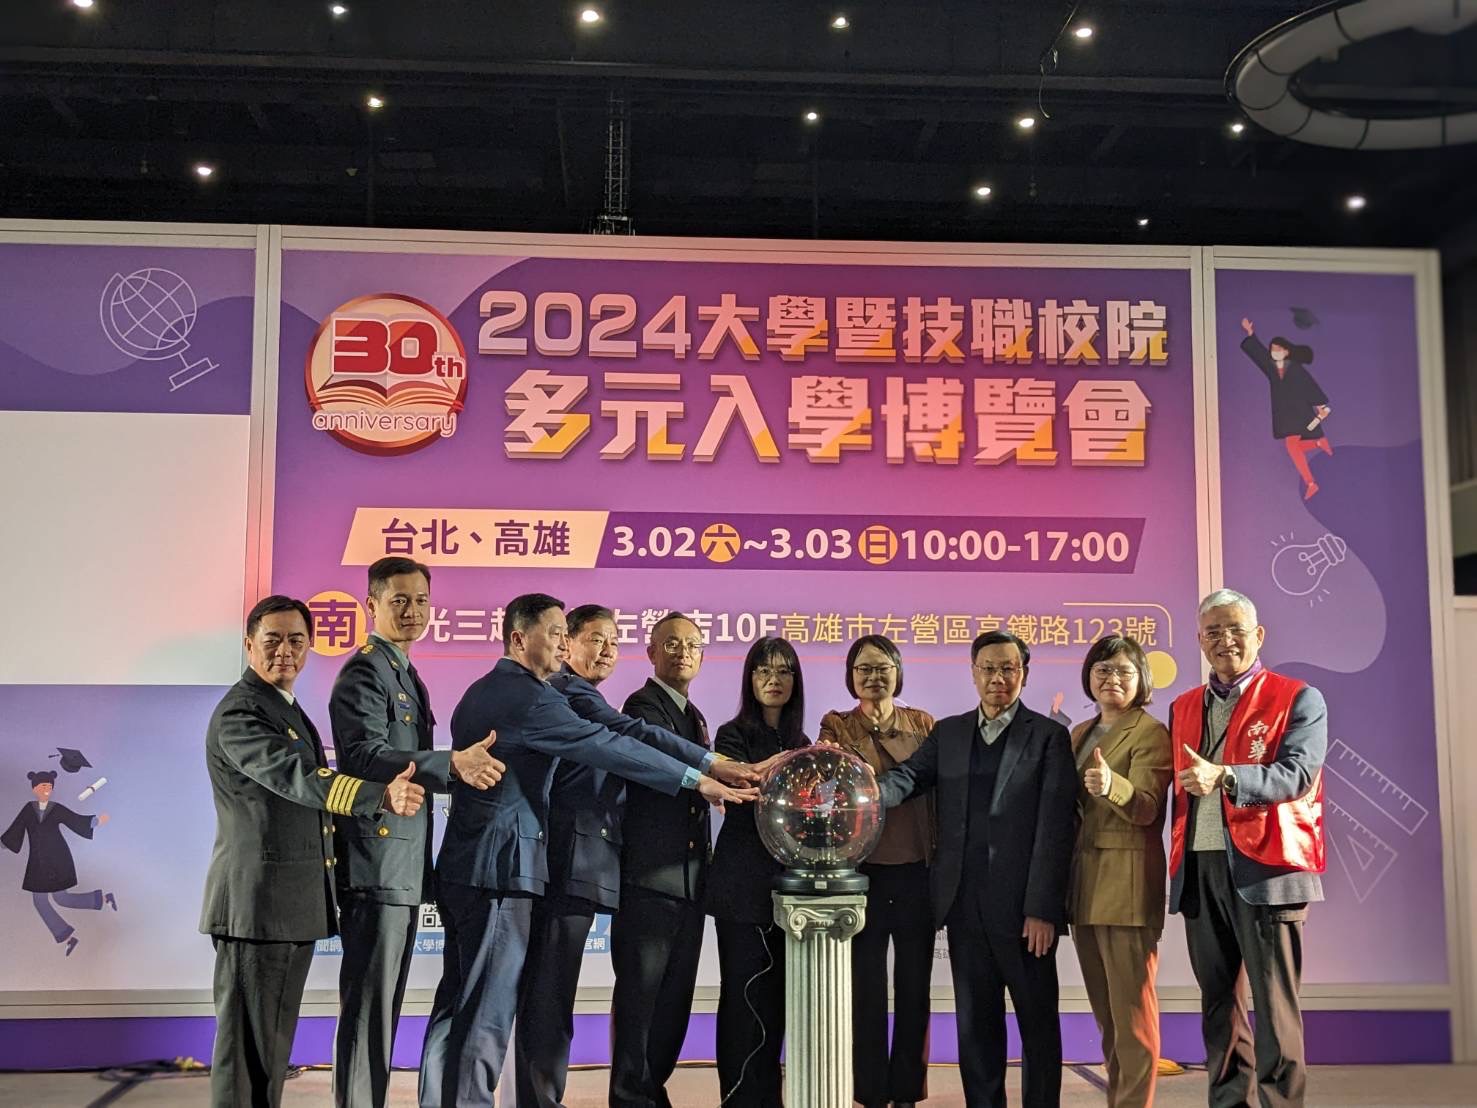 亞洲大學校長蔡進發(右三)參加2024大博會高雄場揭幕儀式。